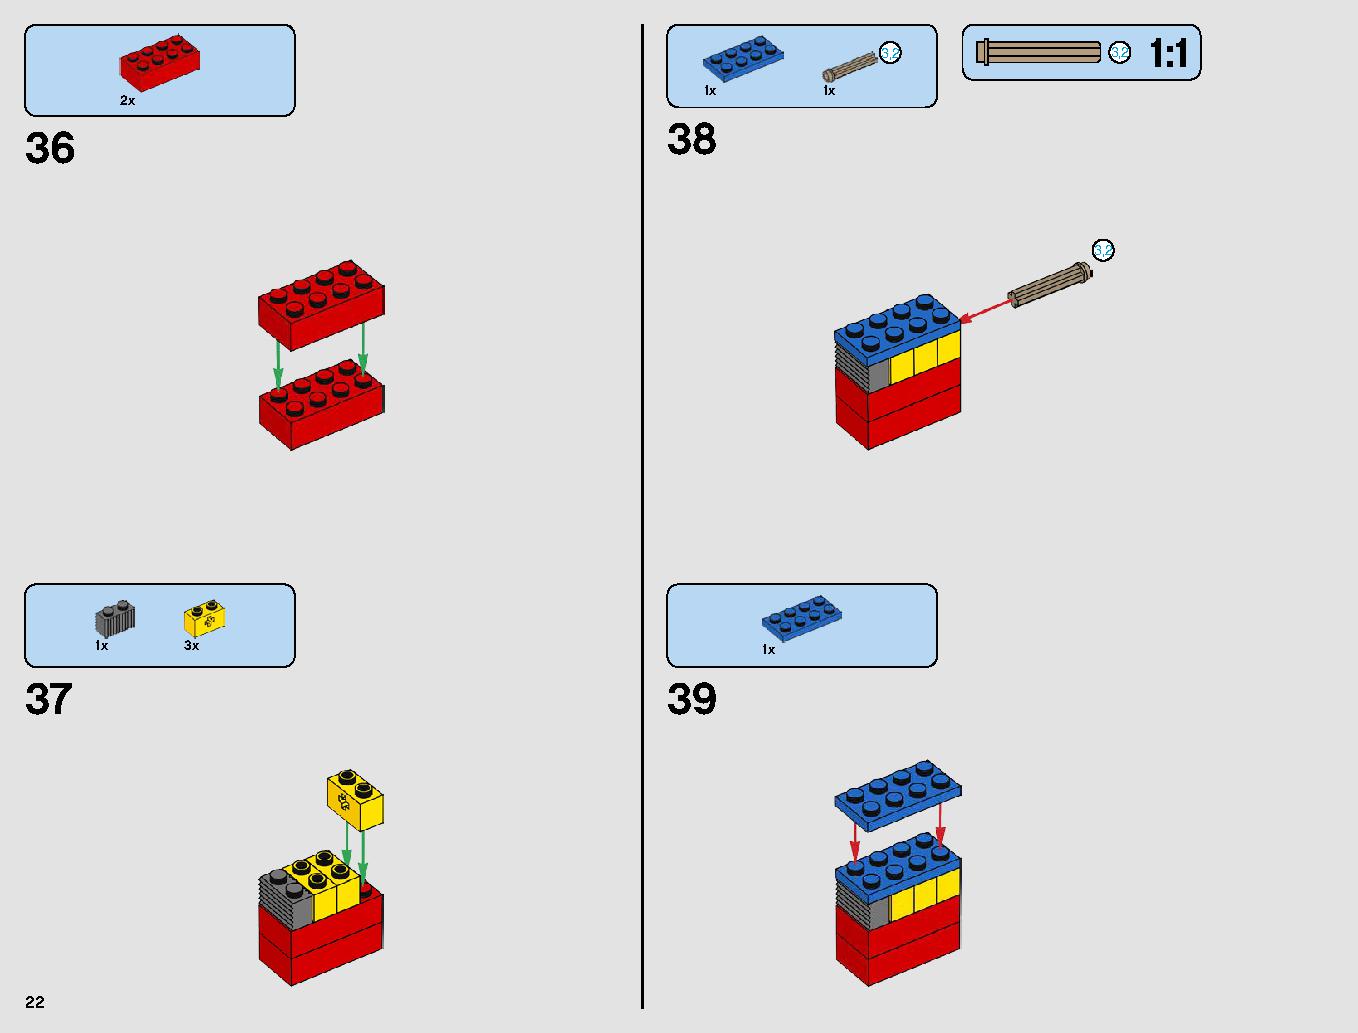 レジスタンス・ボマー 75188 レゴの商品情報 レゴの説明書・組立方法 22 page